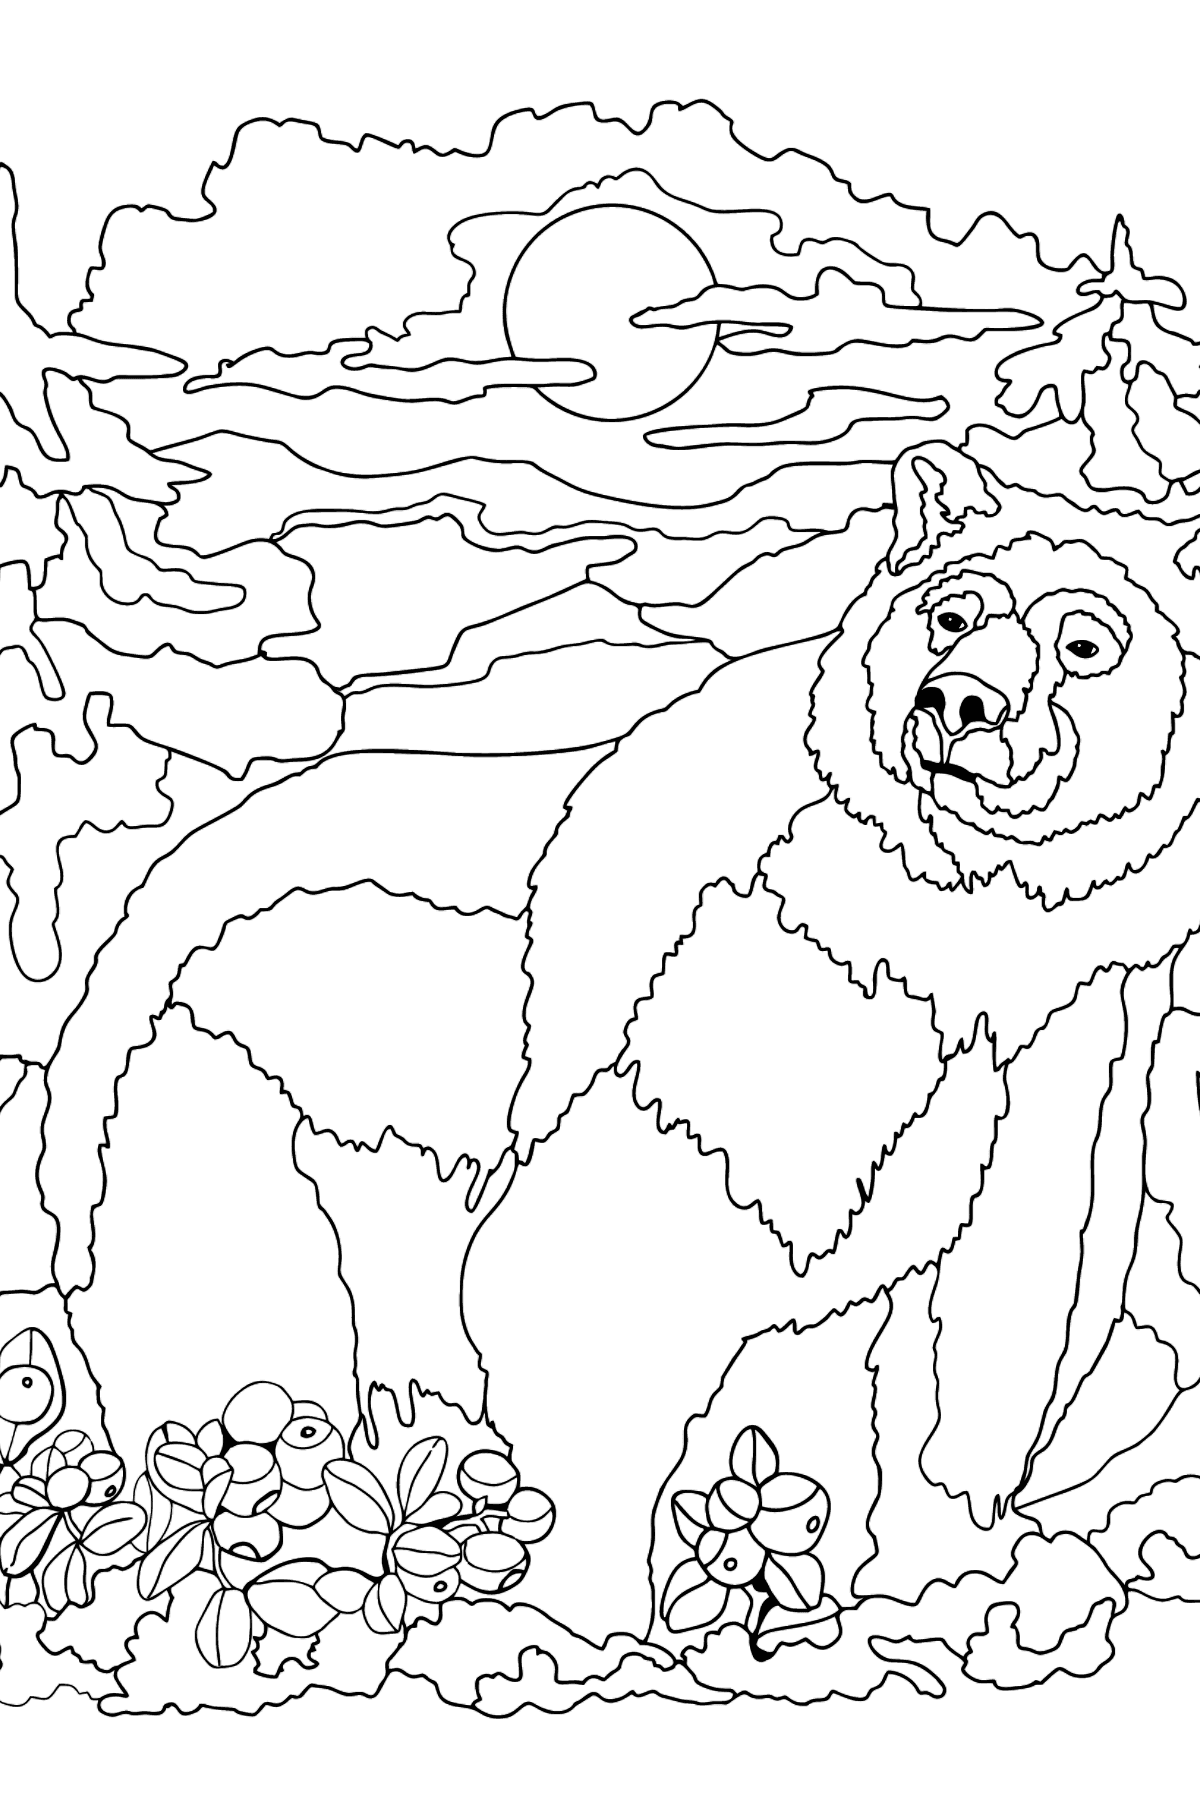 Медведи раскраска игра. Медведь раскраска. Раскраска медведь в лесу. Раскраска Медвежонок в лесу. Медведь раскраска для взрослых.